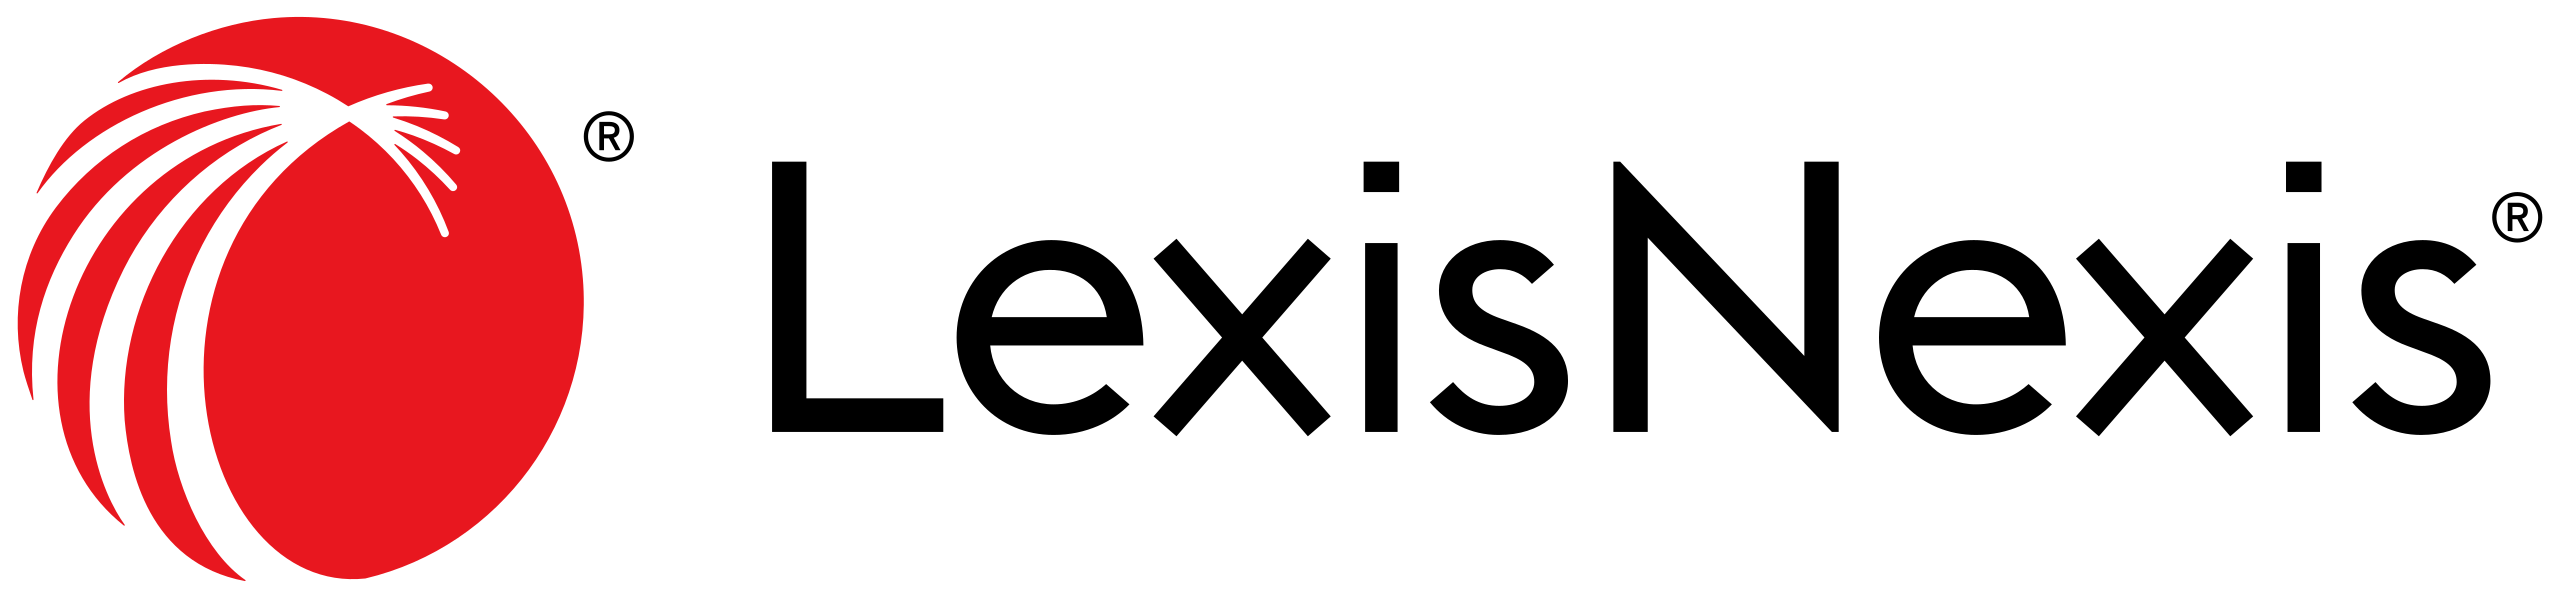 LexisNexis-logo